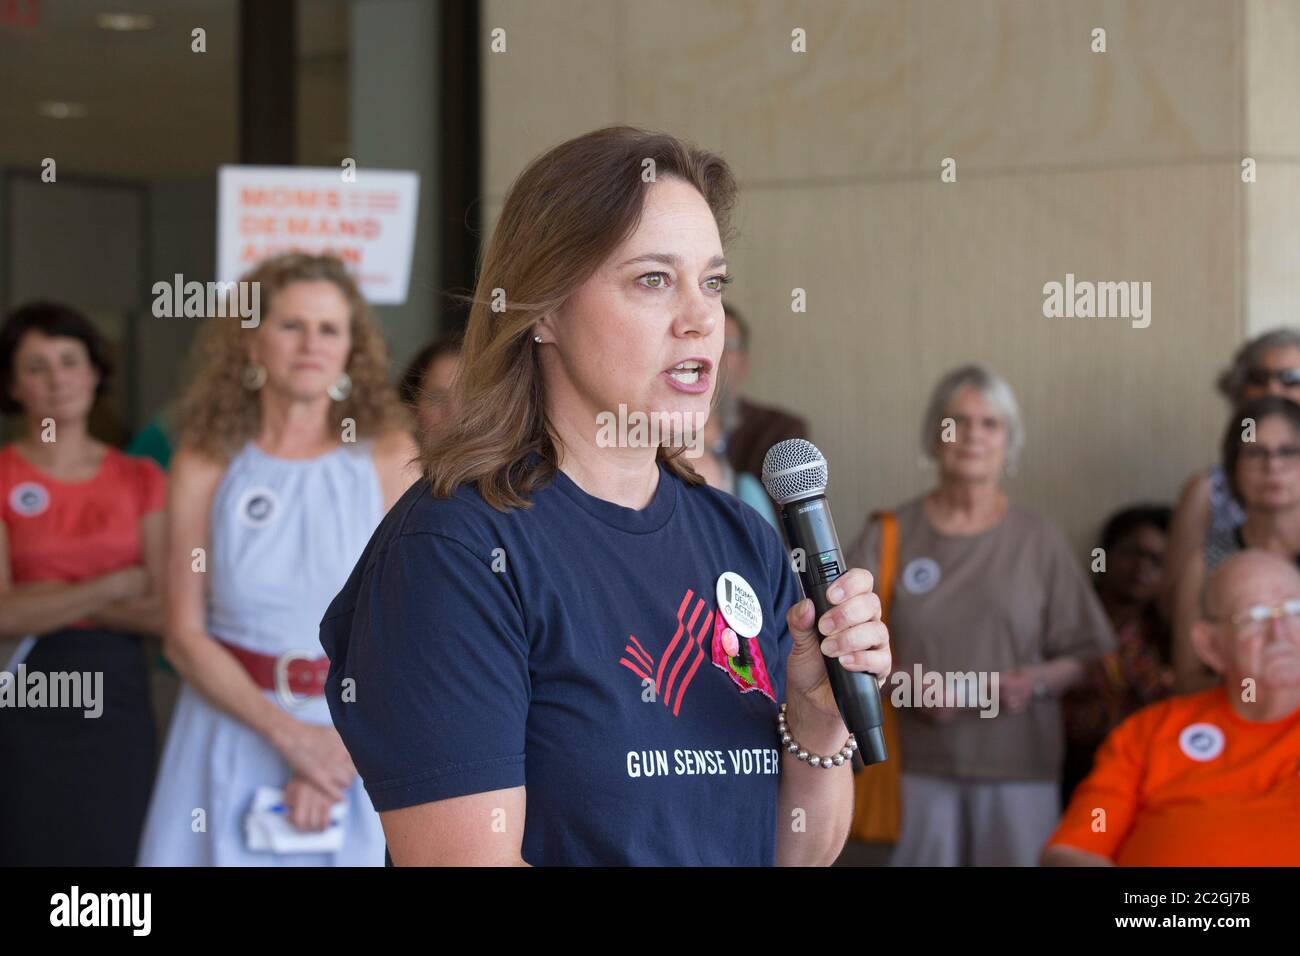 Austin Texas Etats-Unis, 29 juin 2016: Woman parle lors d'un petit rassemblement contre la violence par armes à feu à l'extérieur du siège de l'AFL-CIO mettant en vedette des victimes de violence par armes à feu. ©Bob Daemmrich Banque D'Images